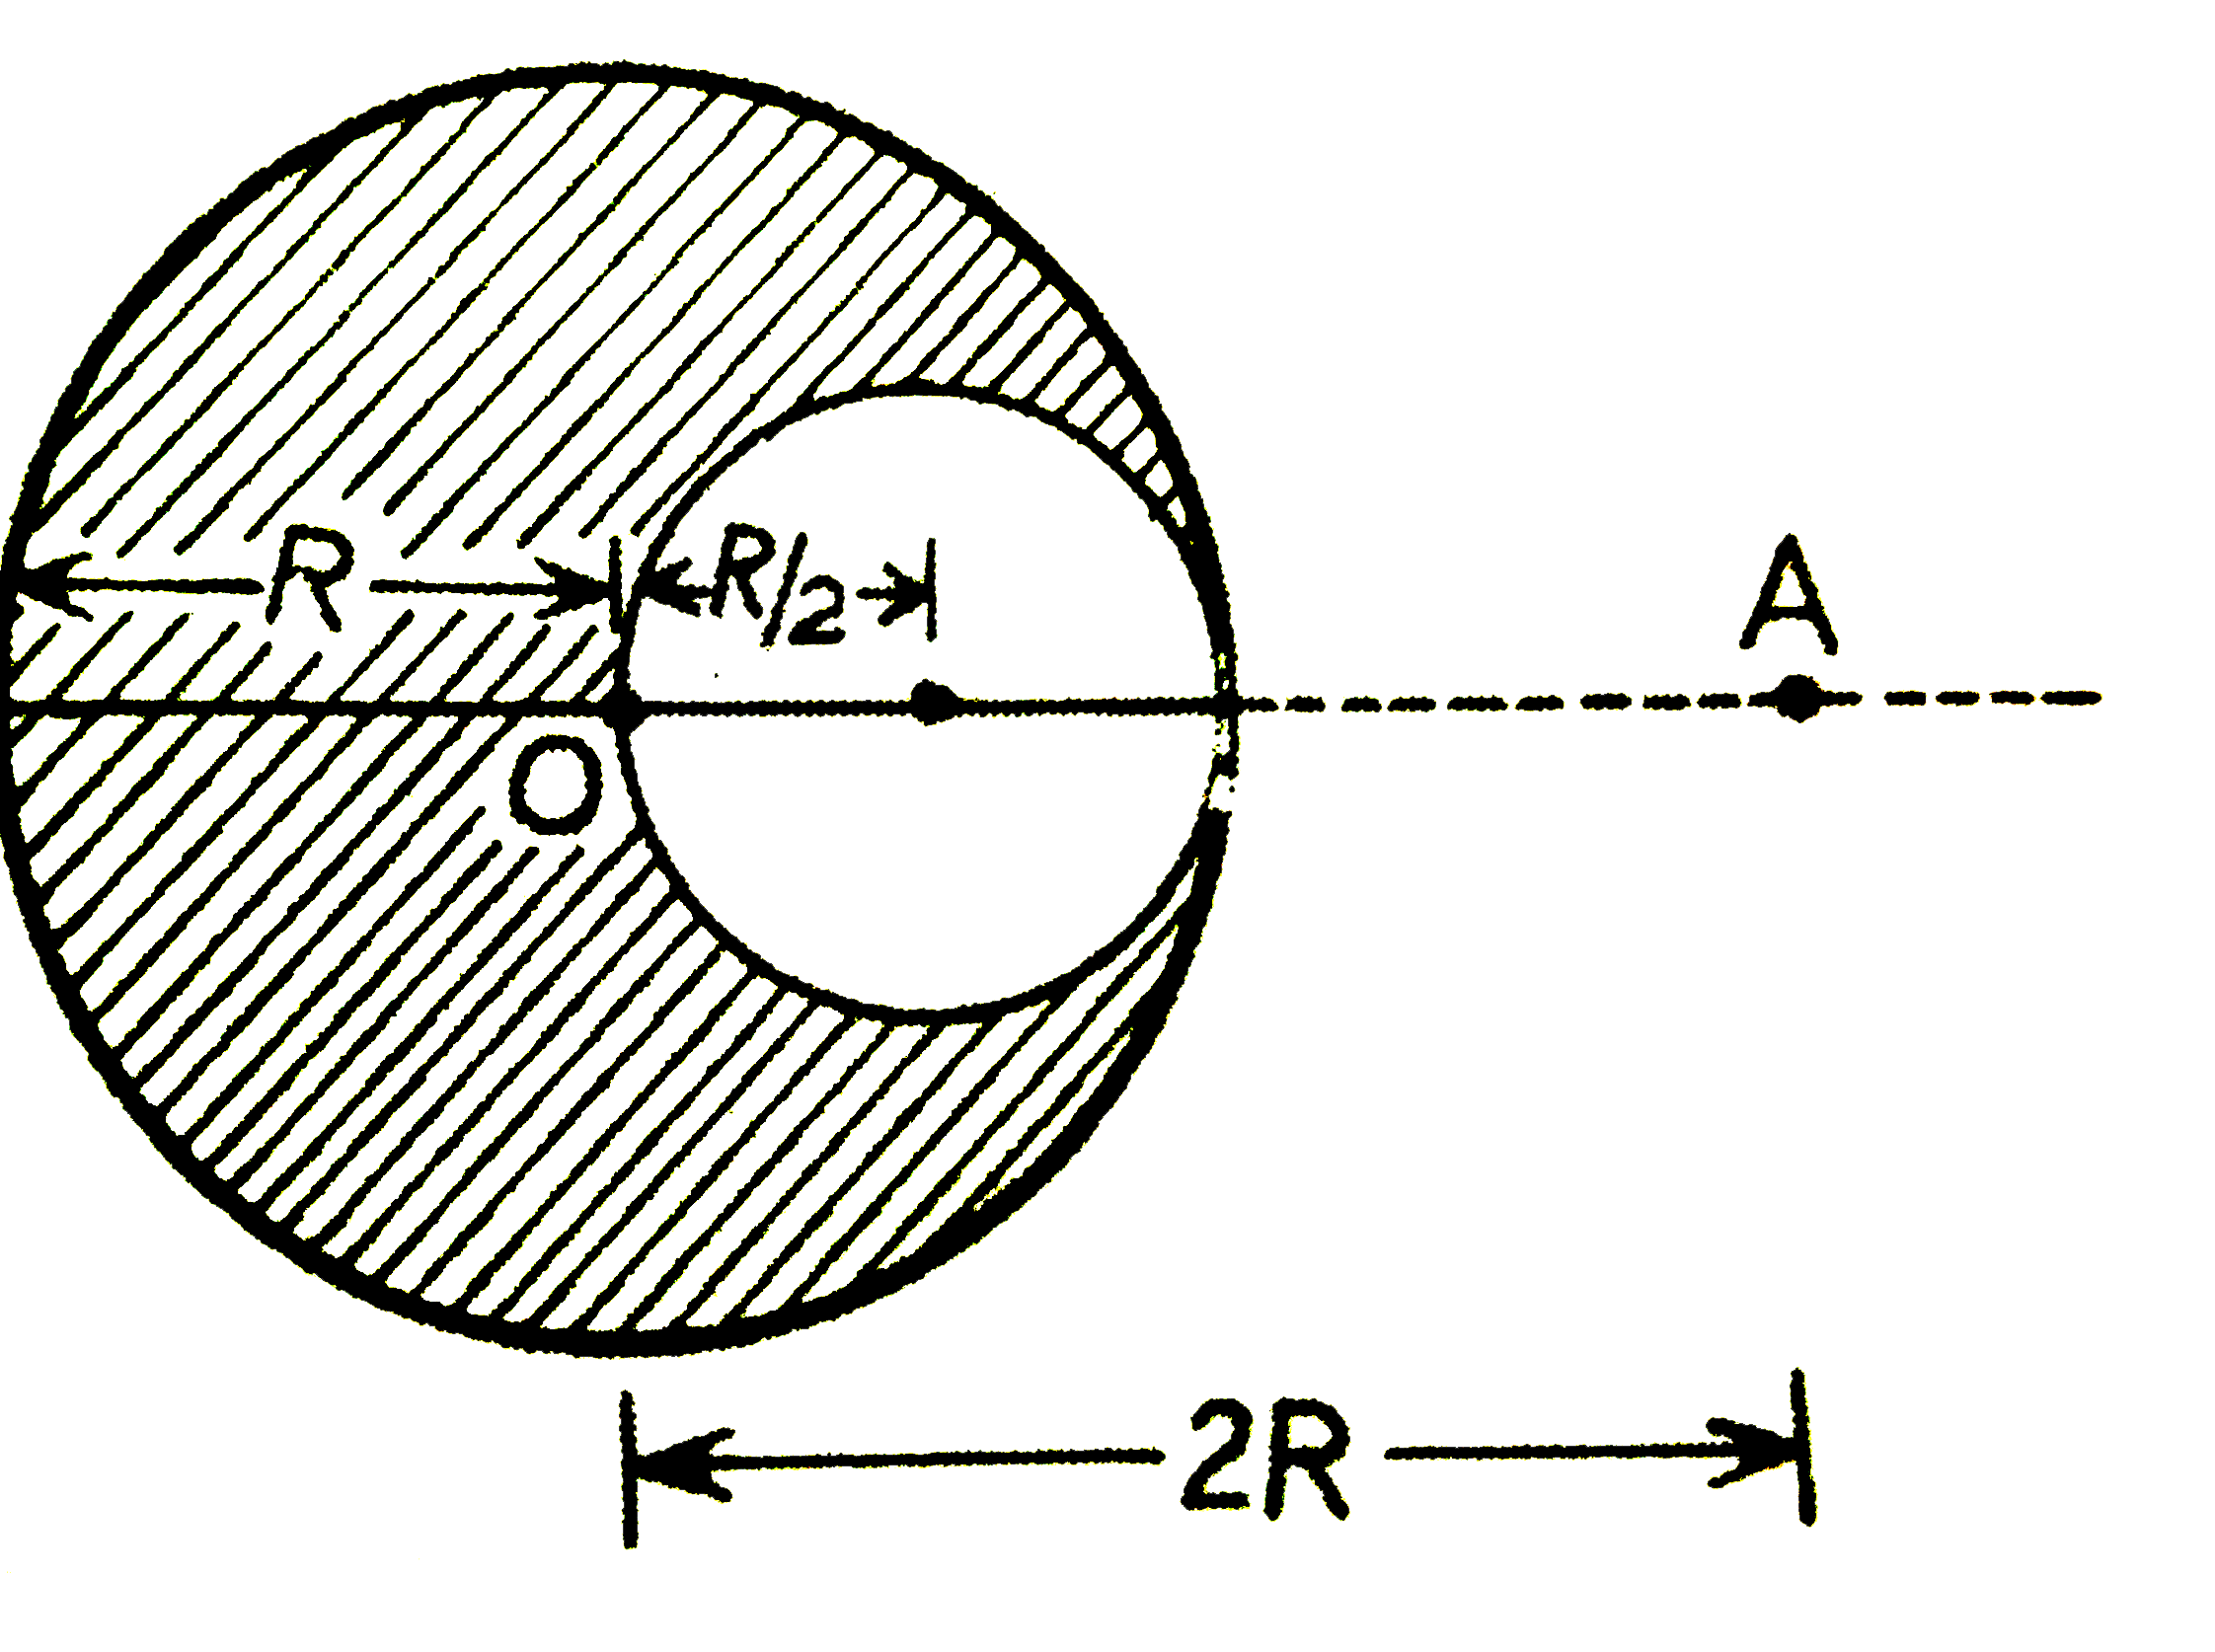 एकसमान घनत्व वाला एक ठोस गोला, जिसकी त्रिज्या R है, अपने केन्द्र O से 2R दूरी पर एक बिन्दु A पर रखे कण पर आकर्षण-बल F(1) लगाता है। त्रिज्या R//2 की एक गोलीय गुहिका गोले से काटी जाती है (चित्र)। शेष गोला, अब उसी बिन्दु A पर स्थित उसी कण पर आकर्षण-बल F(2) लगाता है। अनुपात F(2)//F(1) होगा :